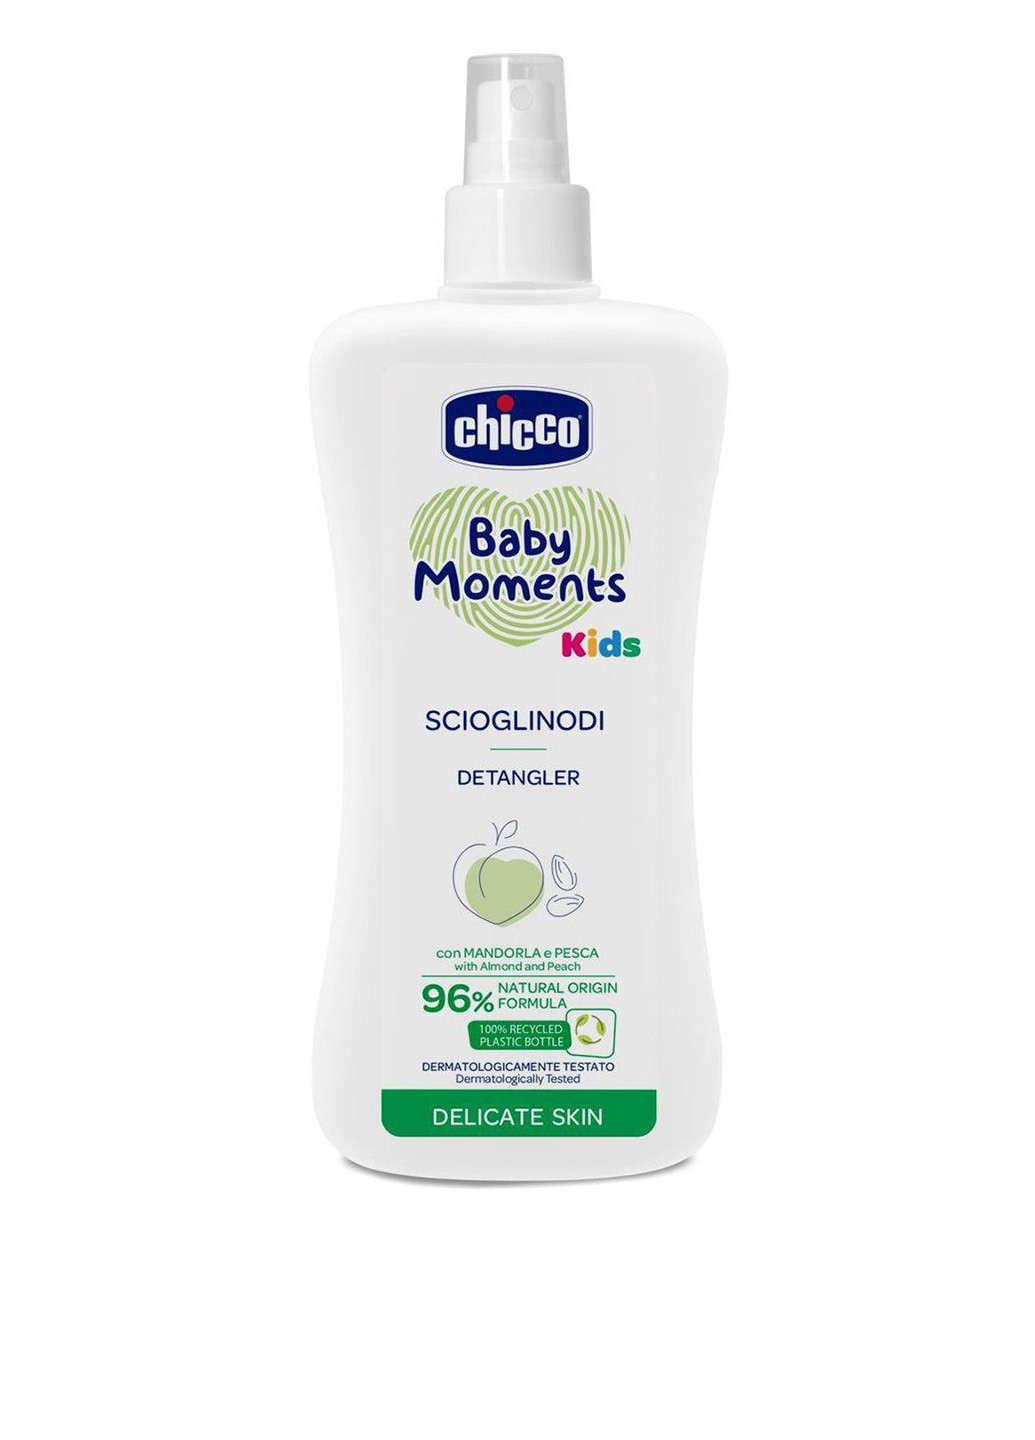 Спрей для легкого расчесывания волос Baby Moments Kids, 200 мл Chicco (256999659)